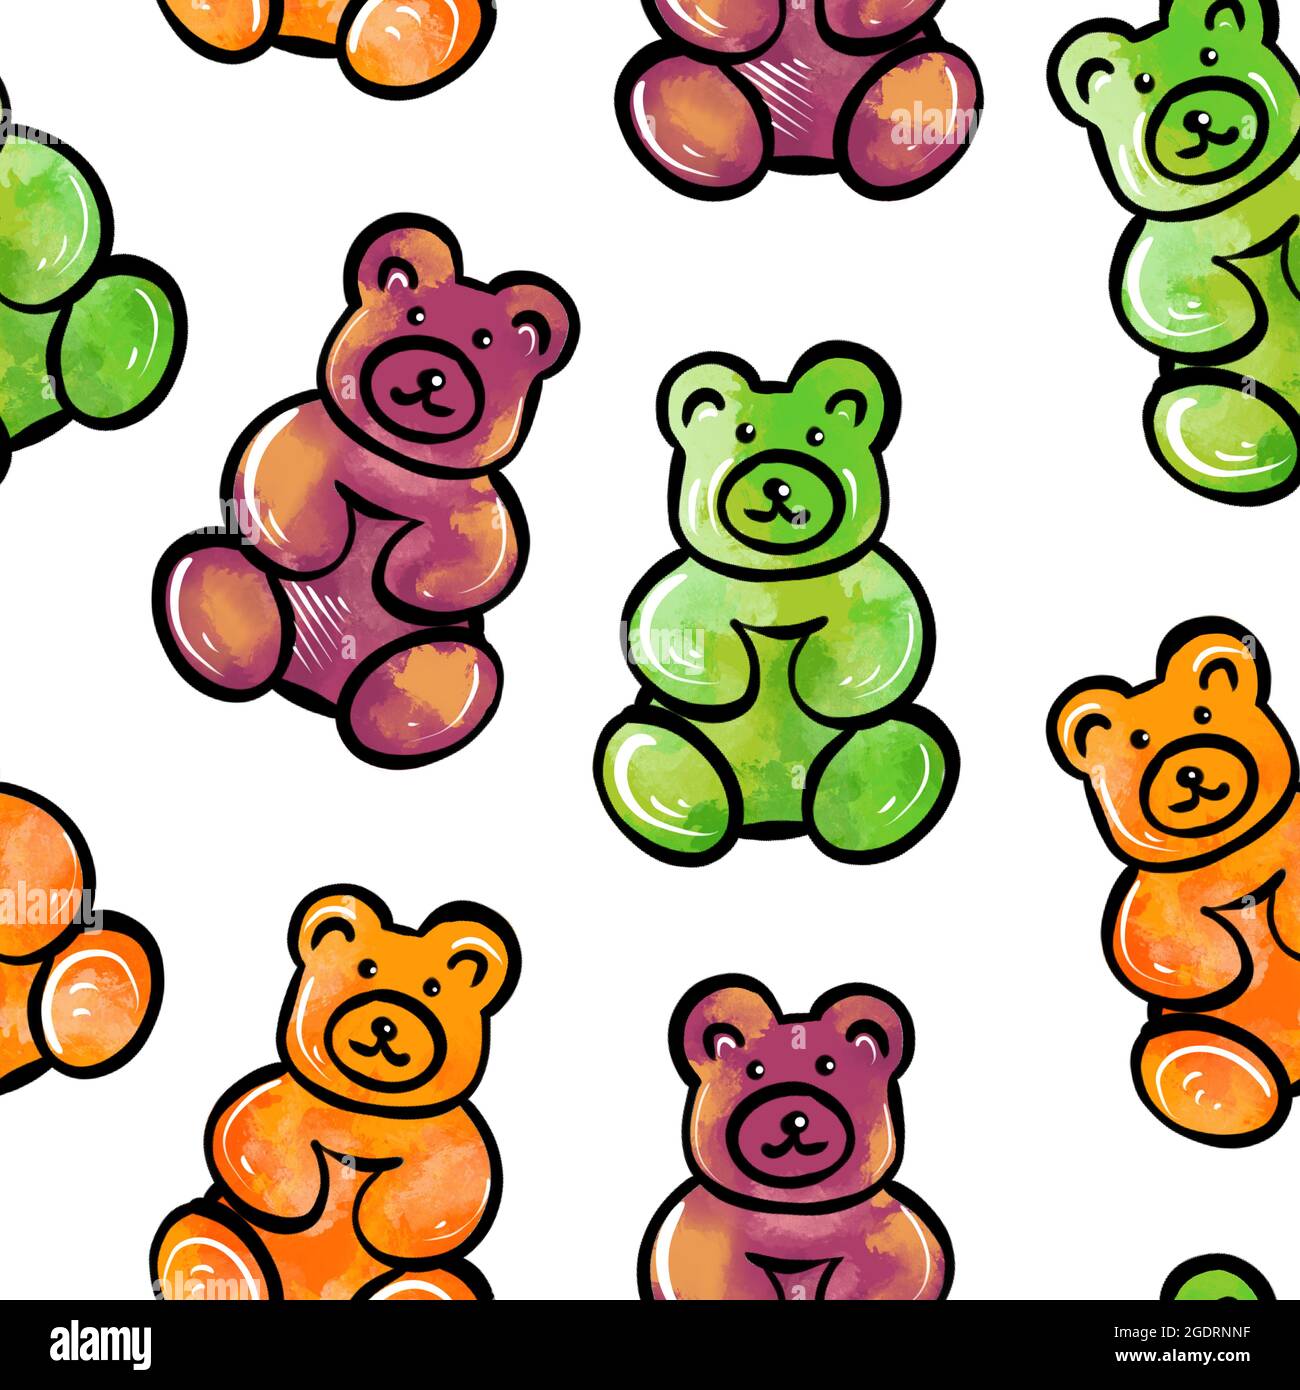 Illustration numérique d'un motif sans couture de bonbons en gelée sous forme d'ours en peluche colorés sur fond blanc. Illustration de haute qualité Banque D'Images